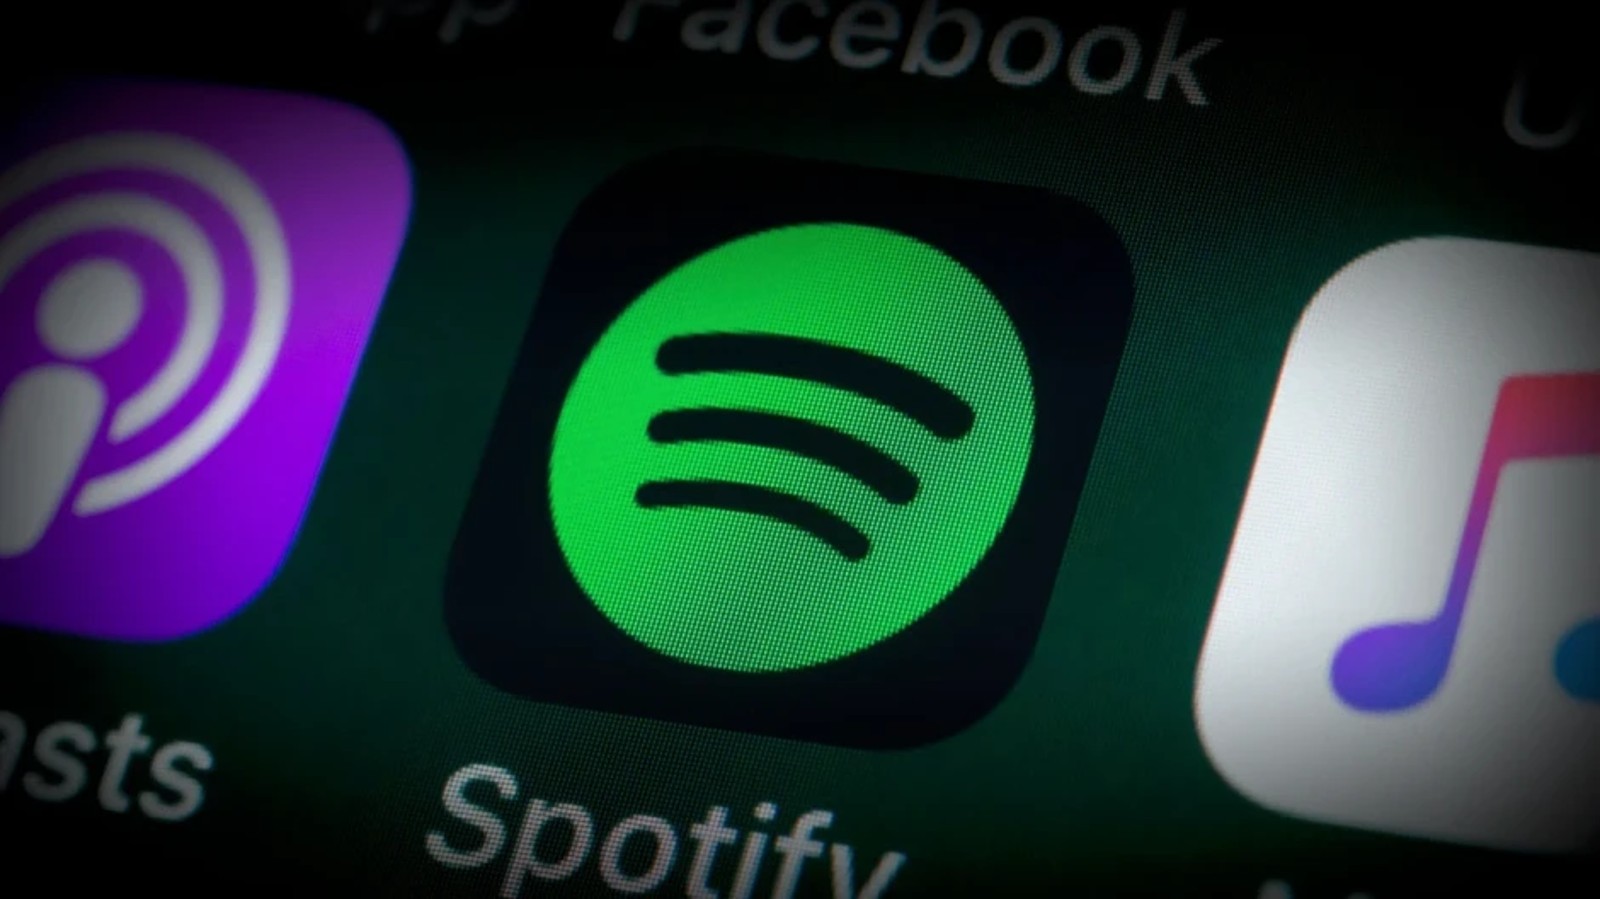 Νέα λειτουργία για το Spotify – Ενσωματώνει το HealthKit